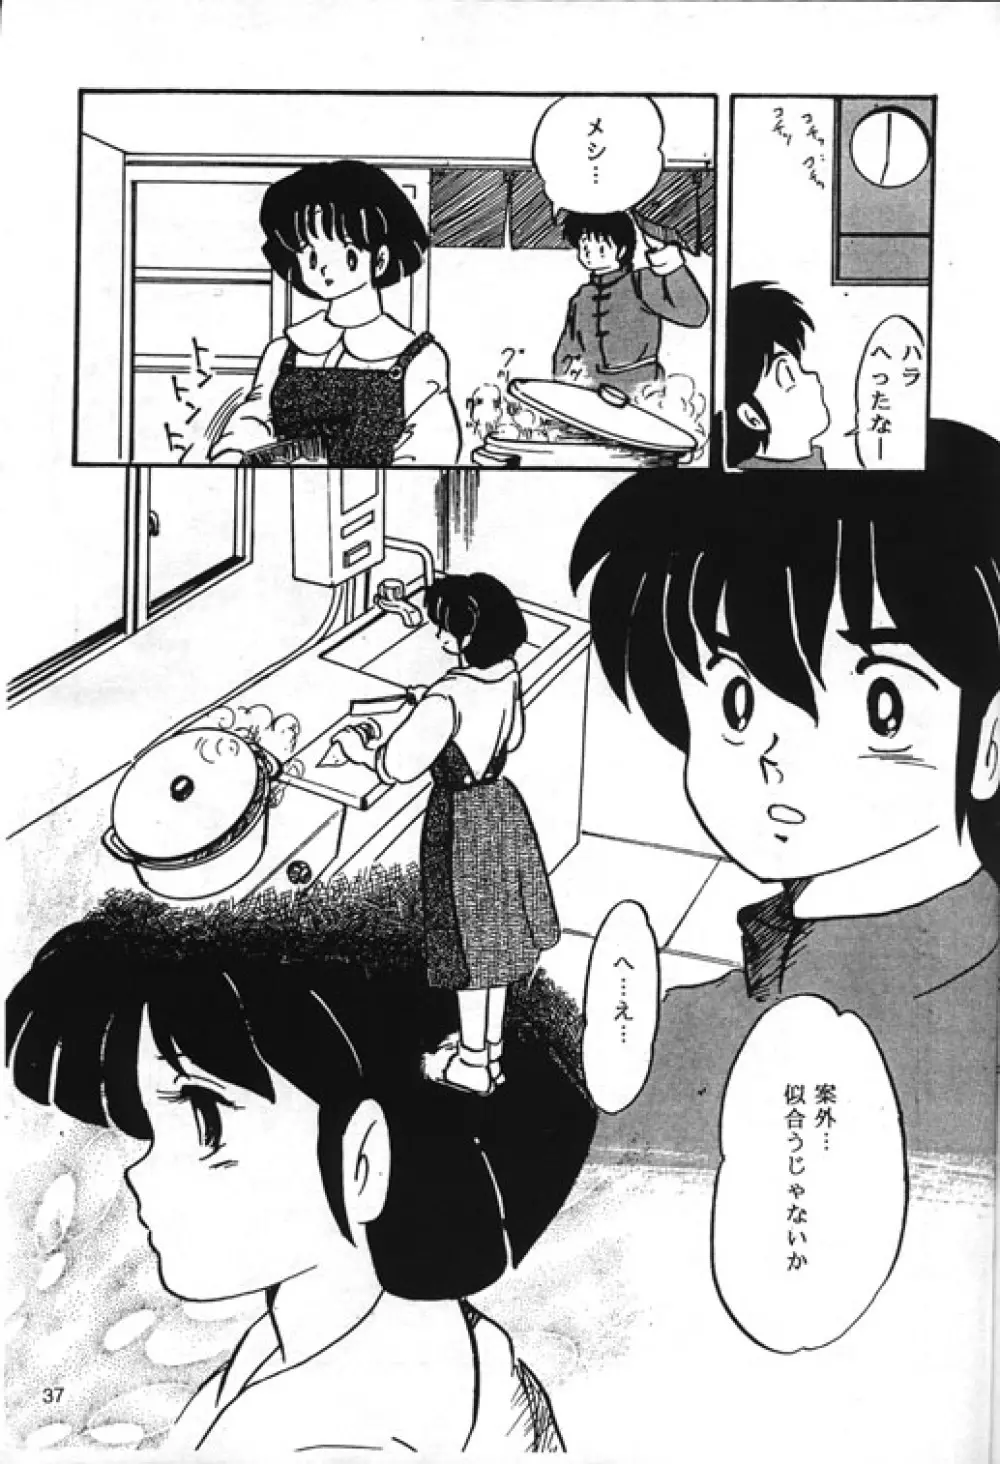 [Kintoki Sakata] Ranma Nibunnoichi - Esse Orange - Lost Virgin (Ranma 1/2) - page9